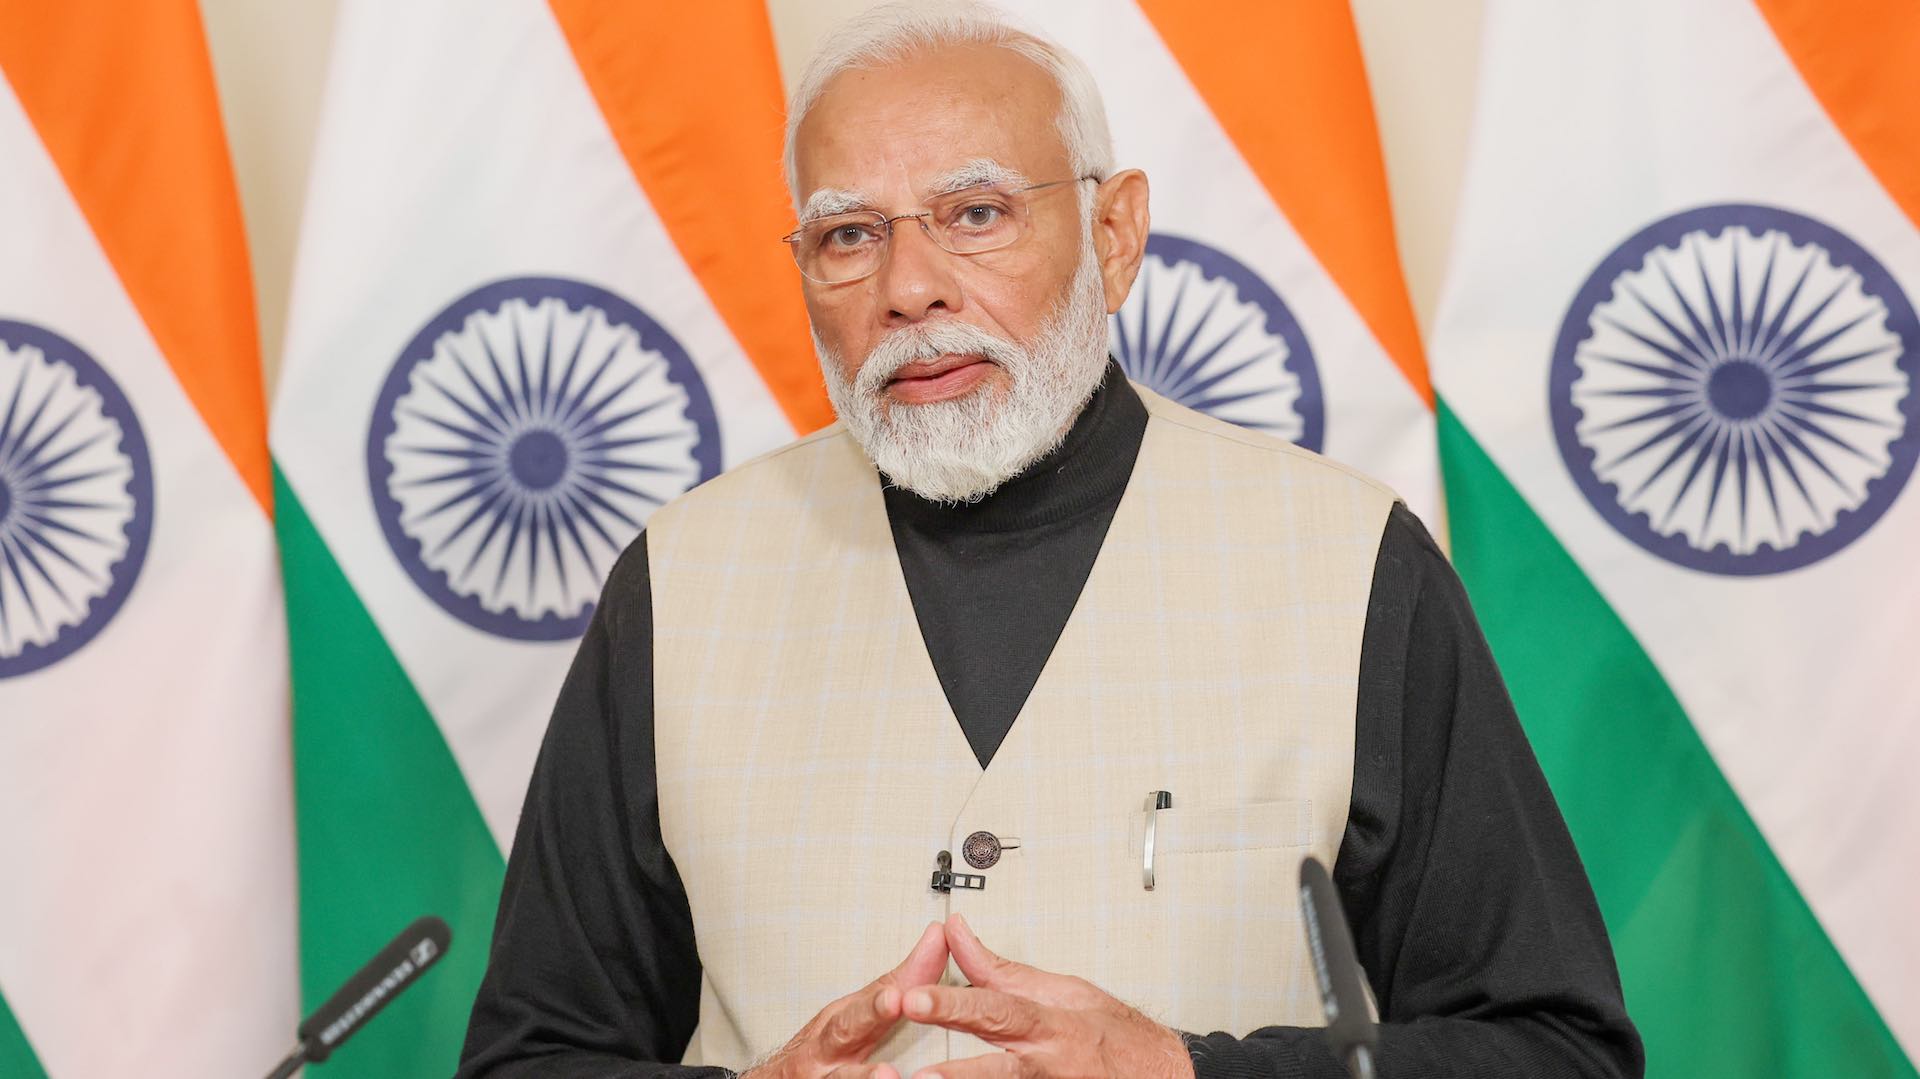 Les politiques visionnaires de Modi poussent l'Inde à viser une croissance de 8 % du PIB